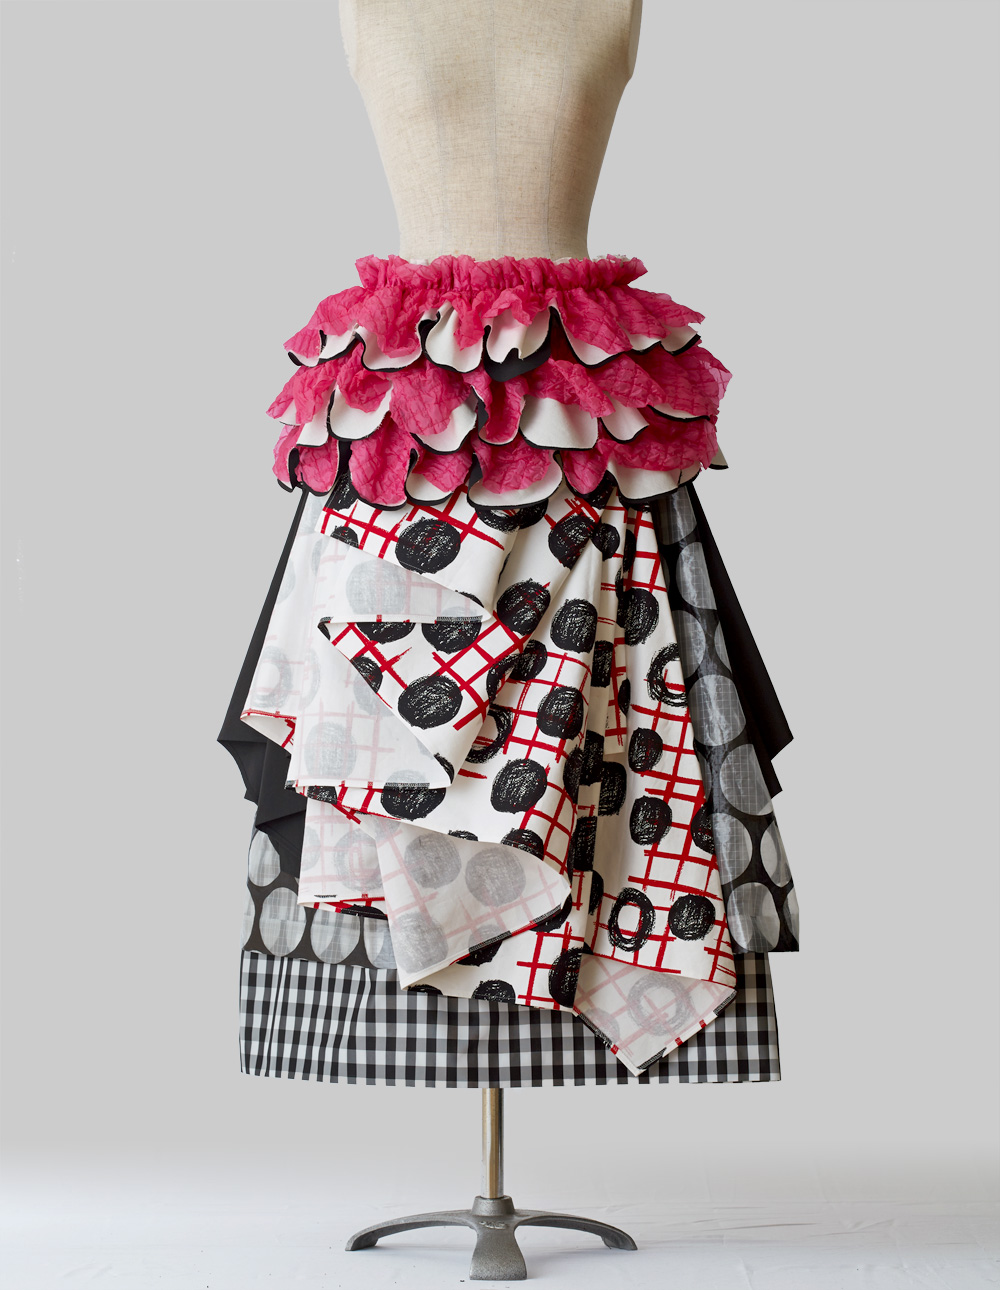 Multi Layered Skirt の紹介です